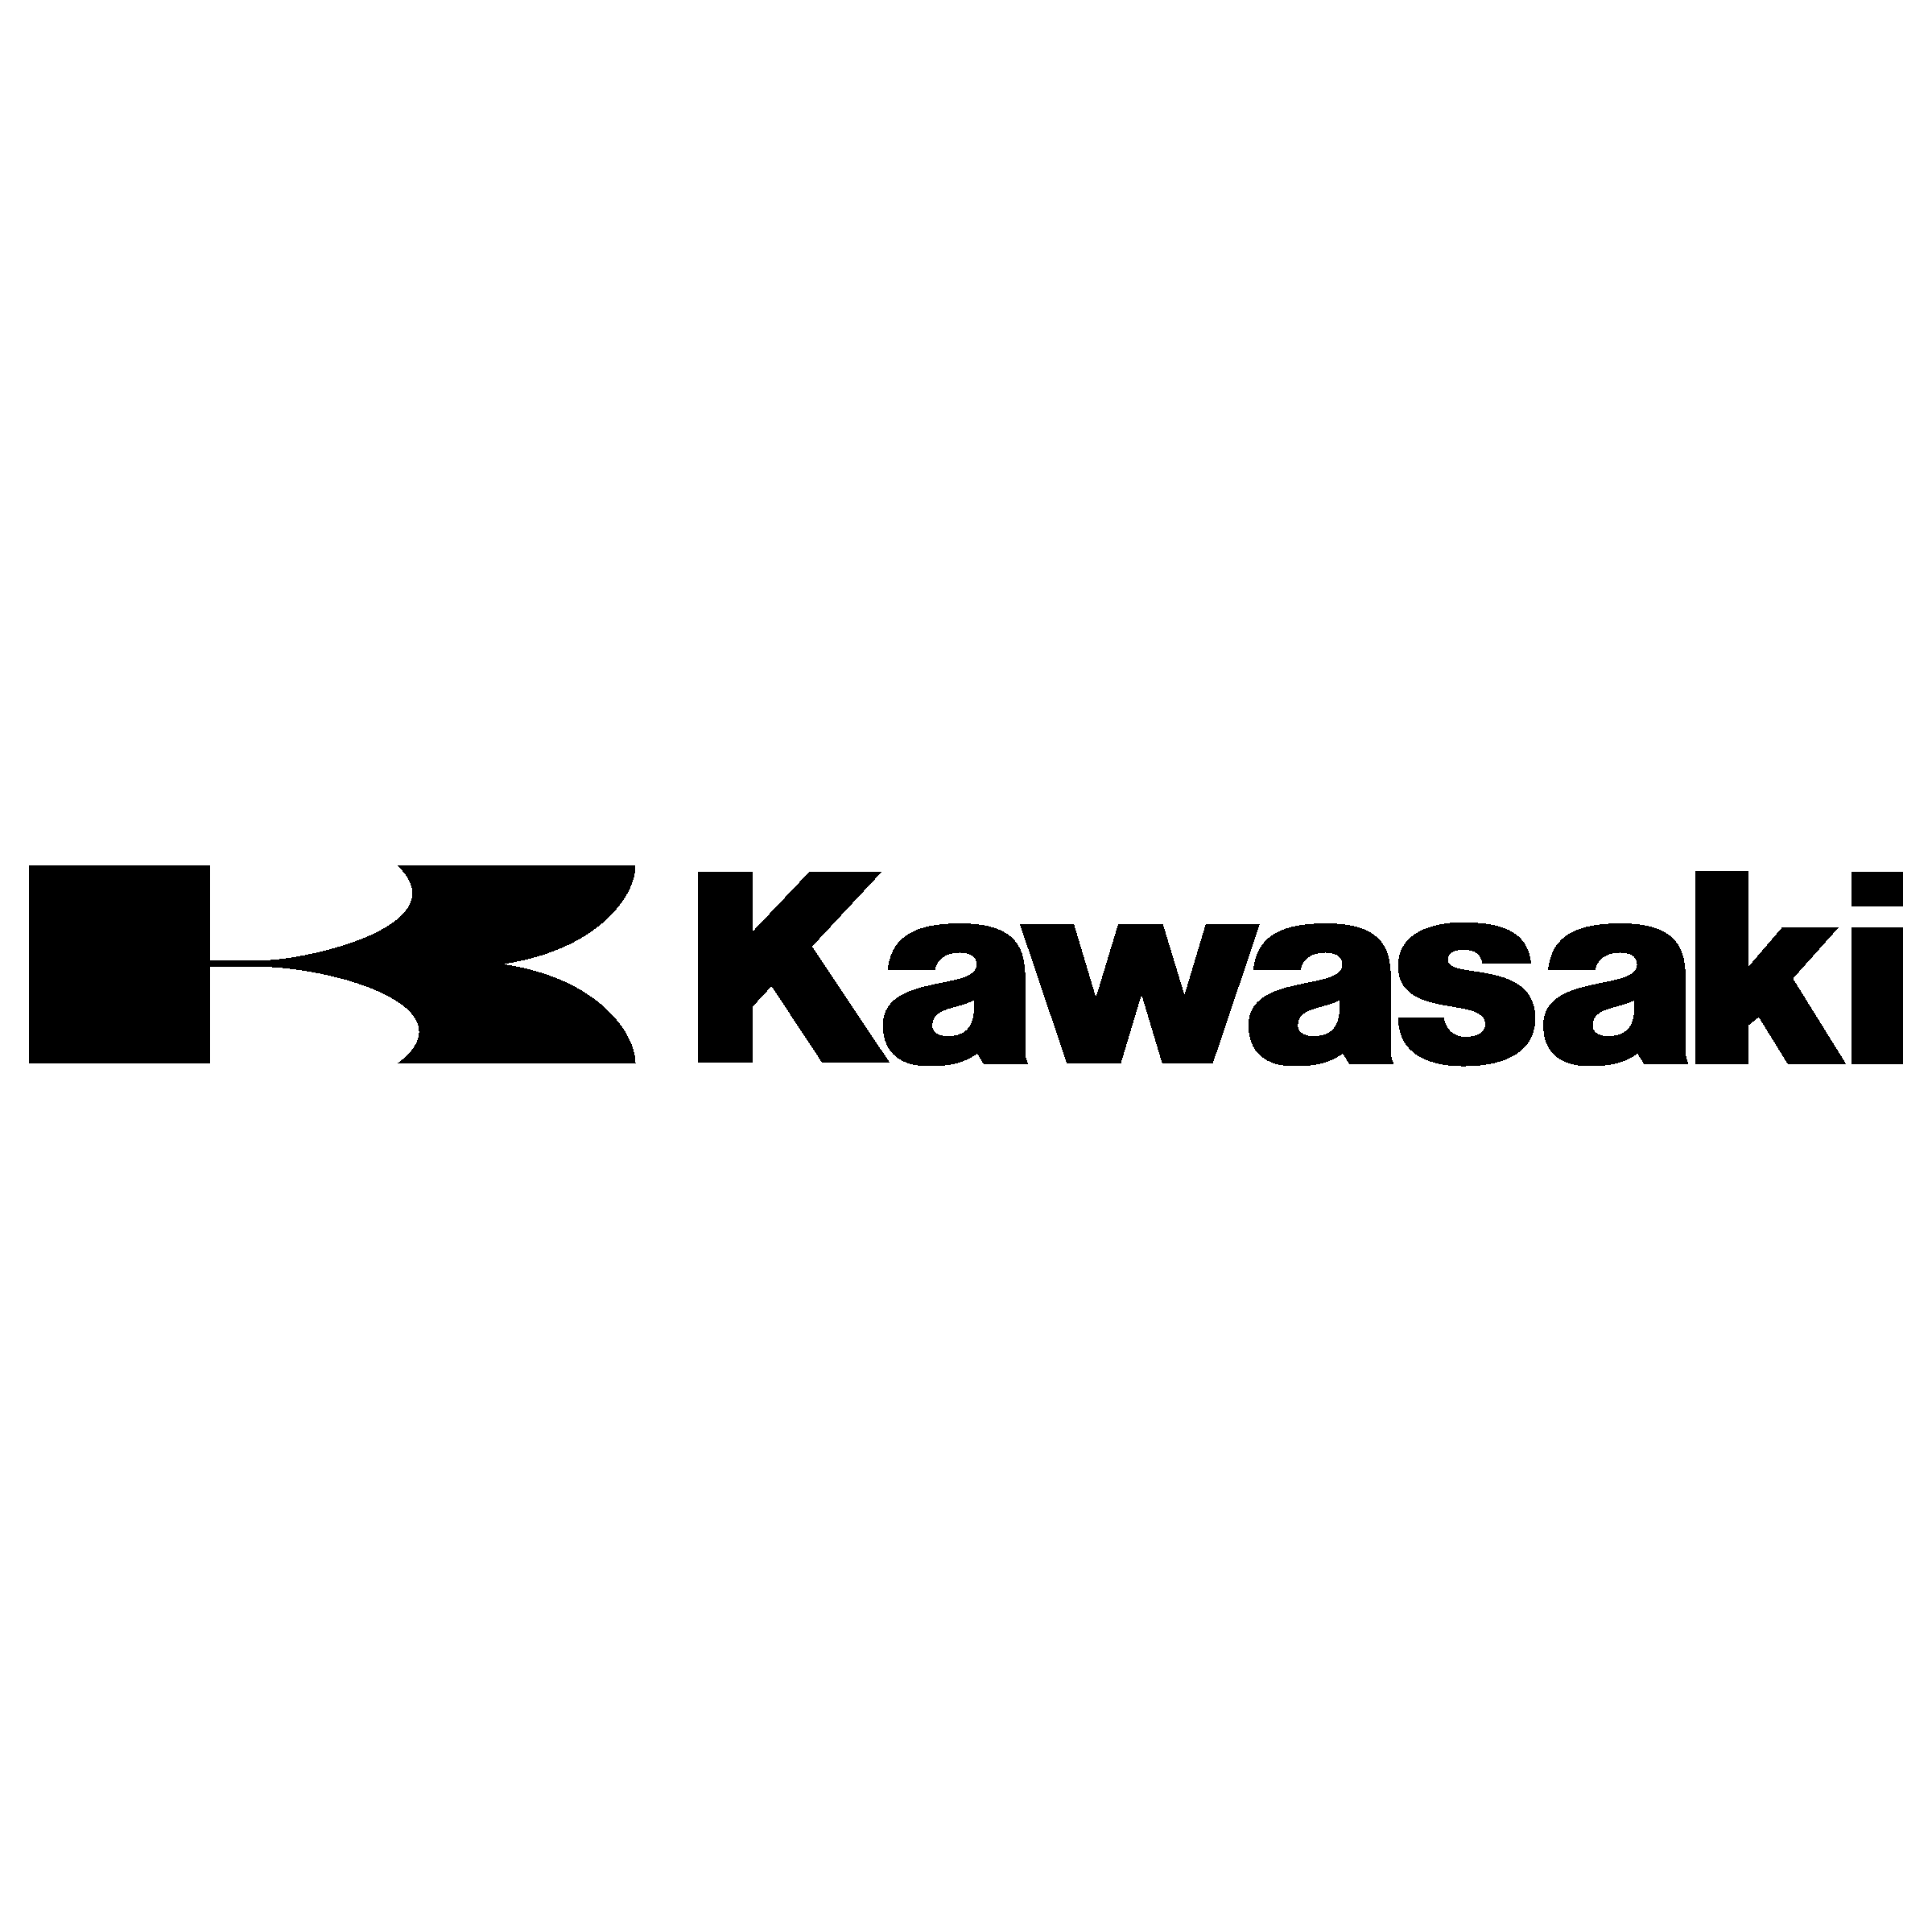 Black Kawasaki Logo - Kawasaki Logo PNG Transparent & SVG Vector - Freebie Supply